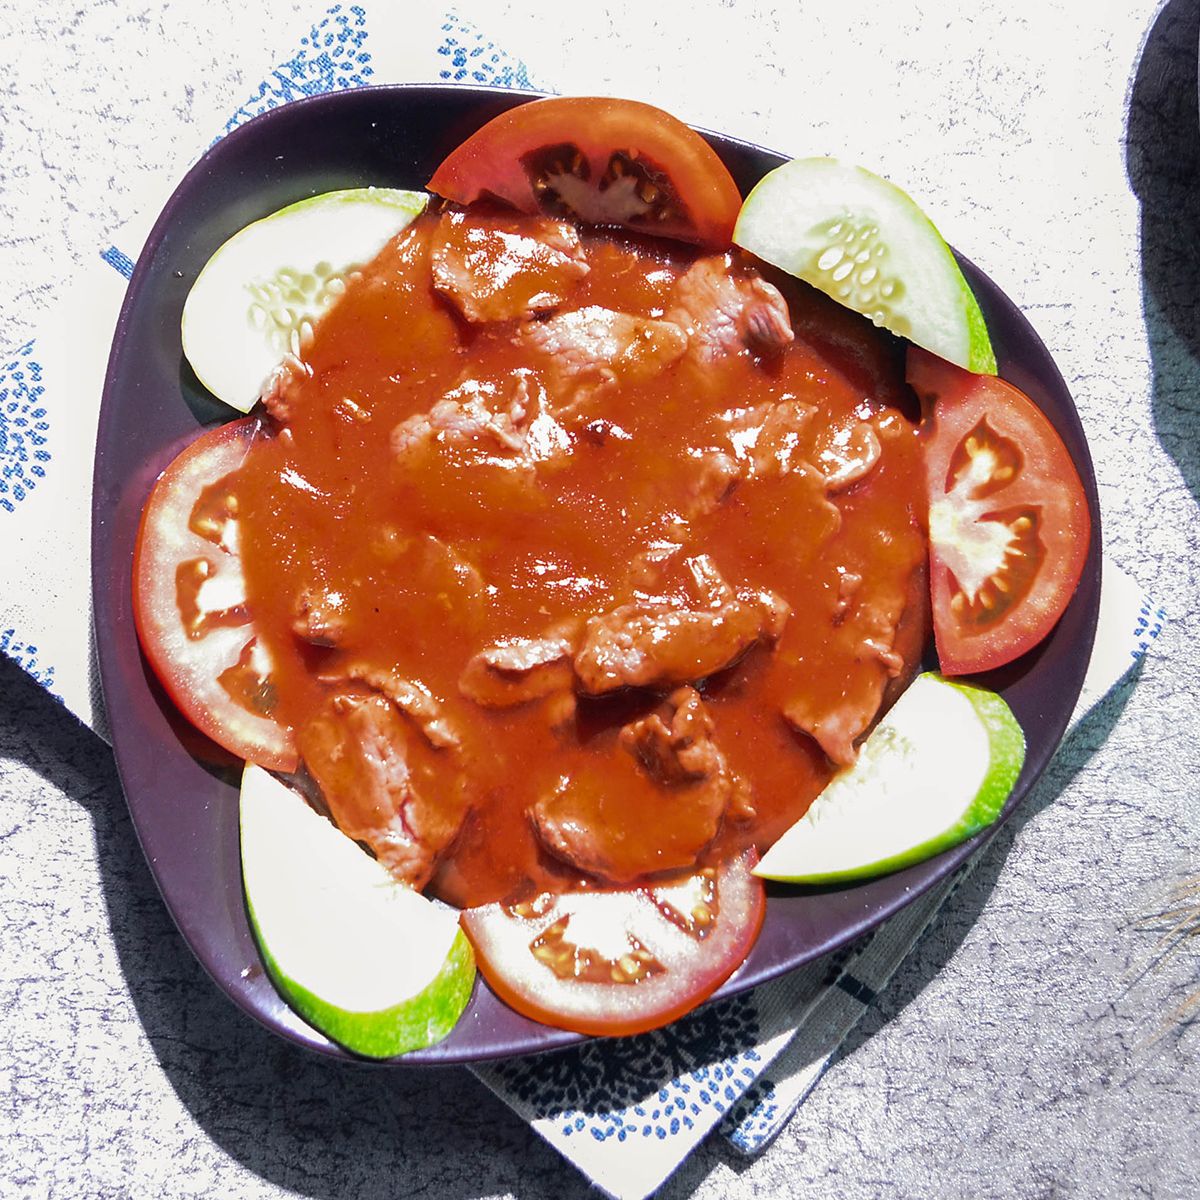  BÒ XÀO (Stir- Fried Sliced Beef With Tomato & Chili Sauce) 